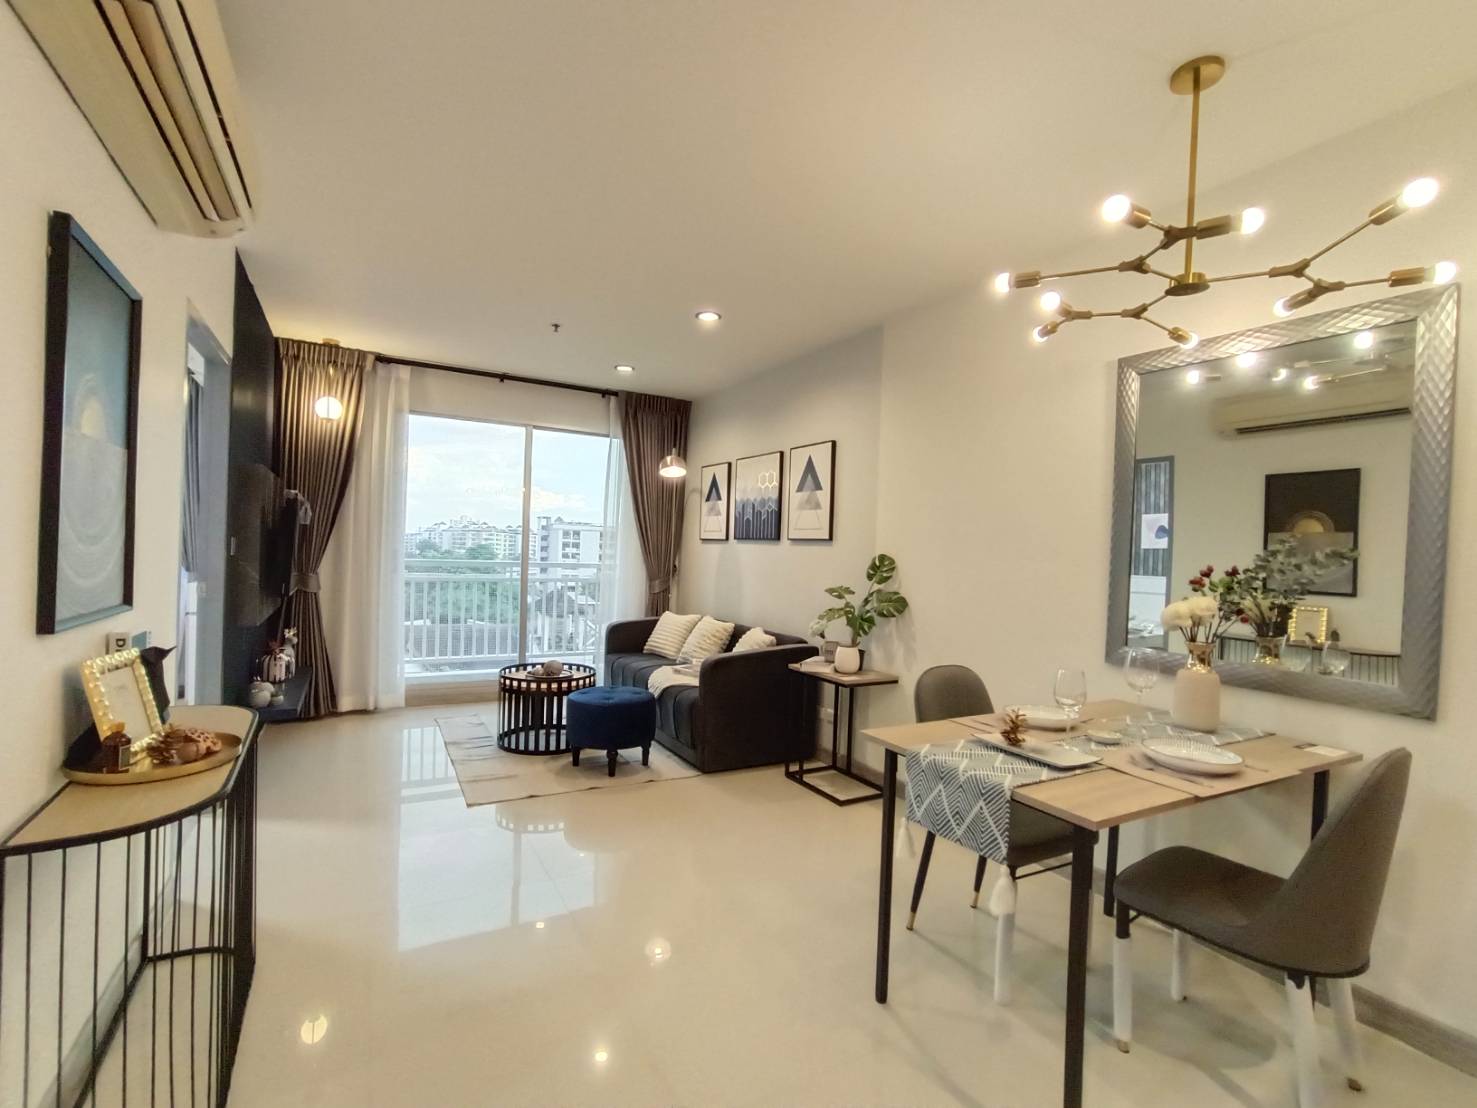 ขายคอนโด Sukhumvit Plus condominium (By Sansiri) for sell ห้อง Renovate สวยหรู ทำเลดี หัวมุมพระราม 4 -สุขุมวิท